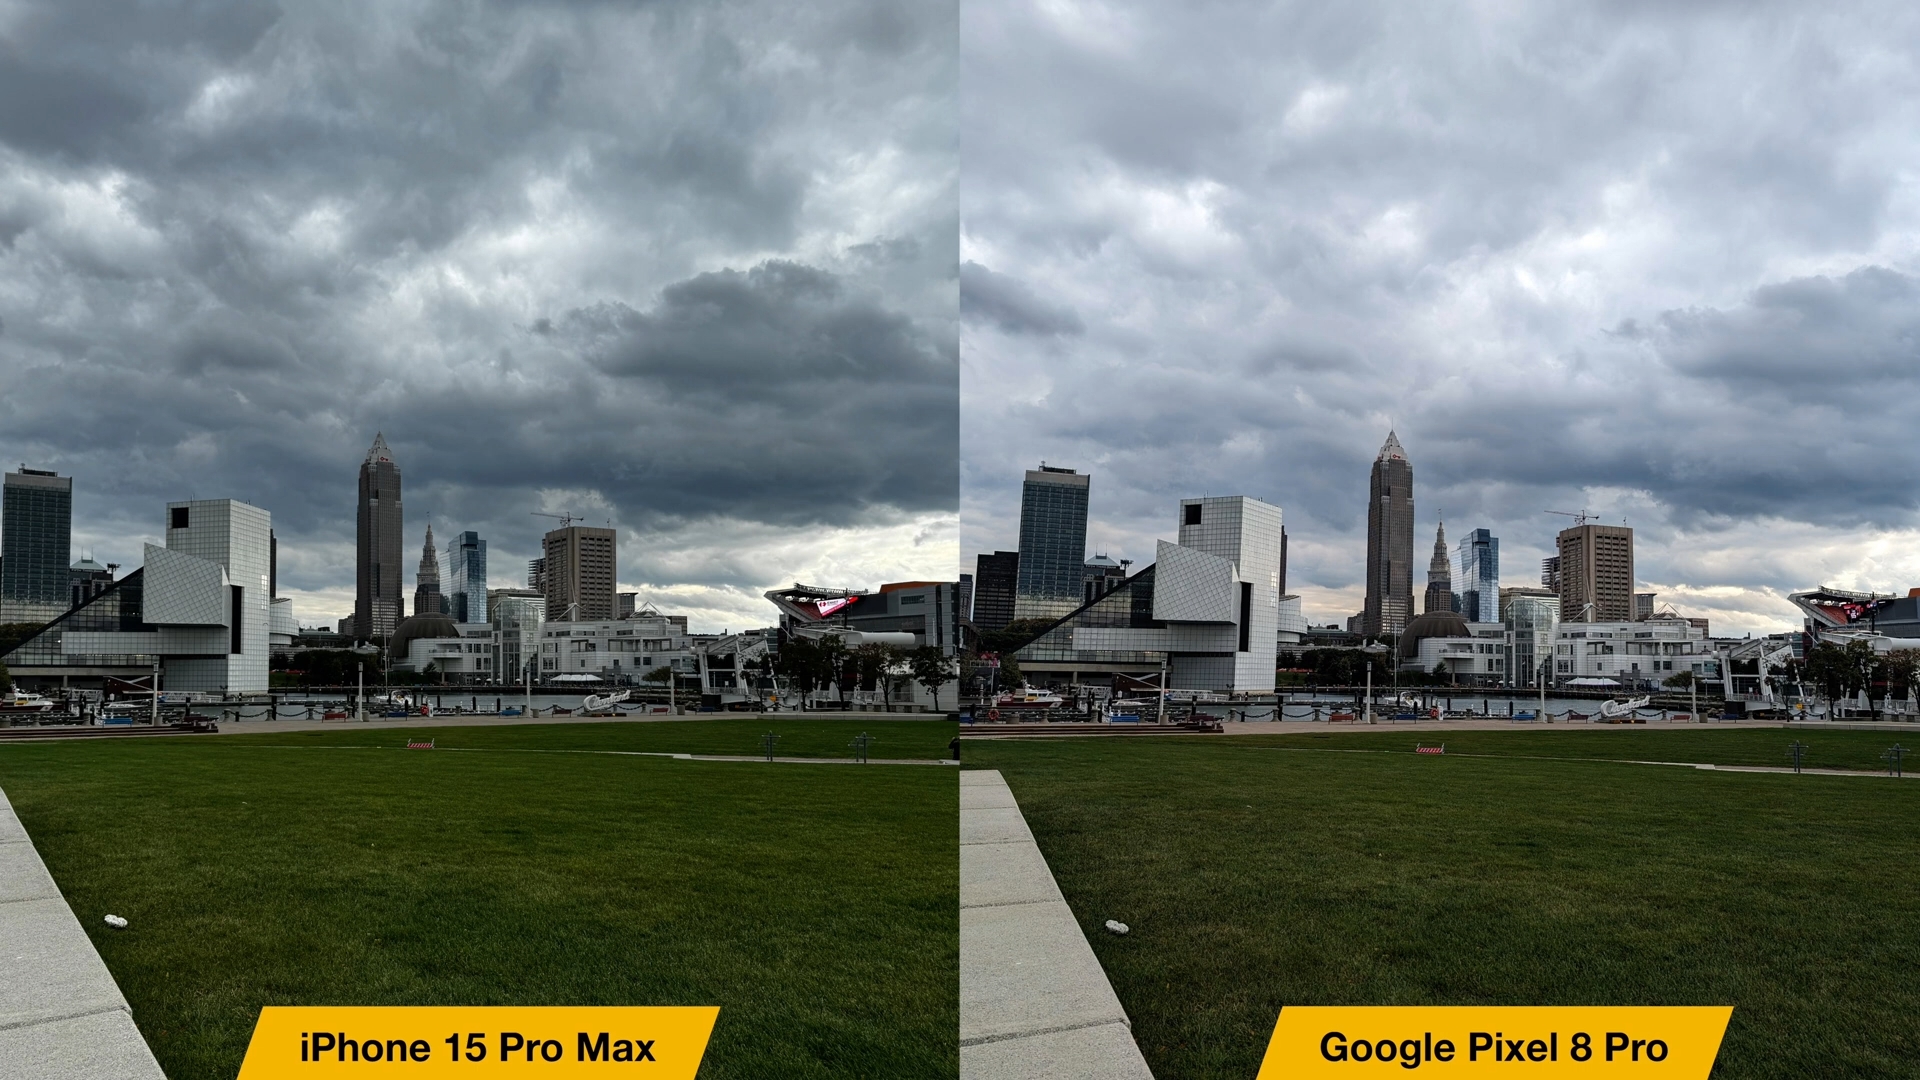 来自 iPhoneIslam.com，iPhone 15 Pro Max 和 Google Pixel 8 Pro 的照片比较